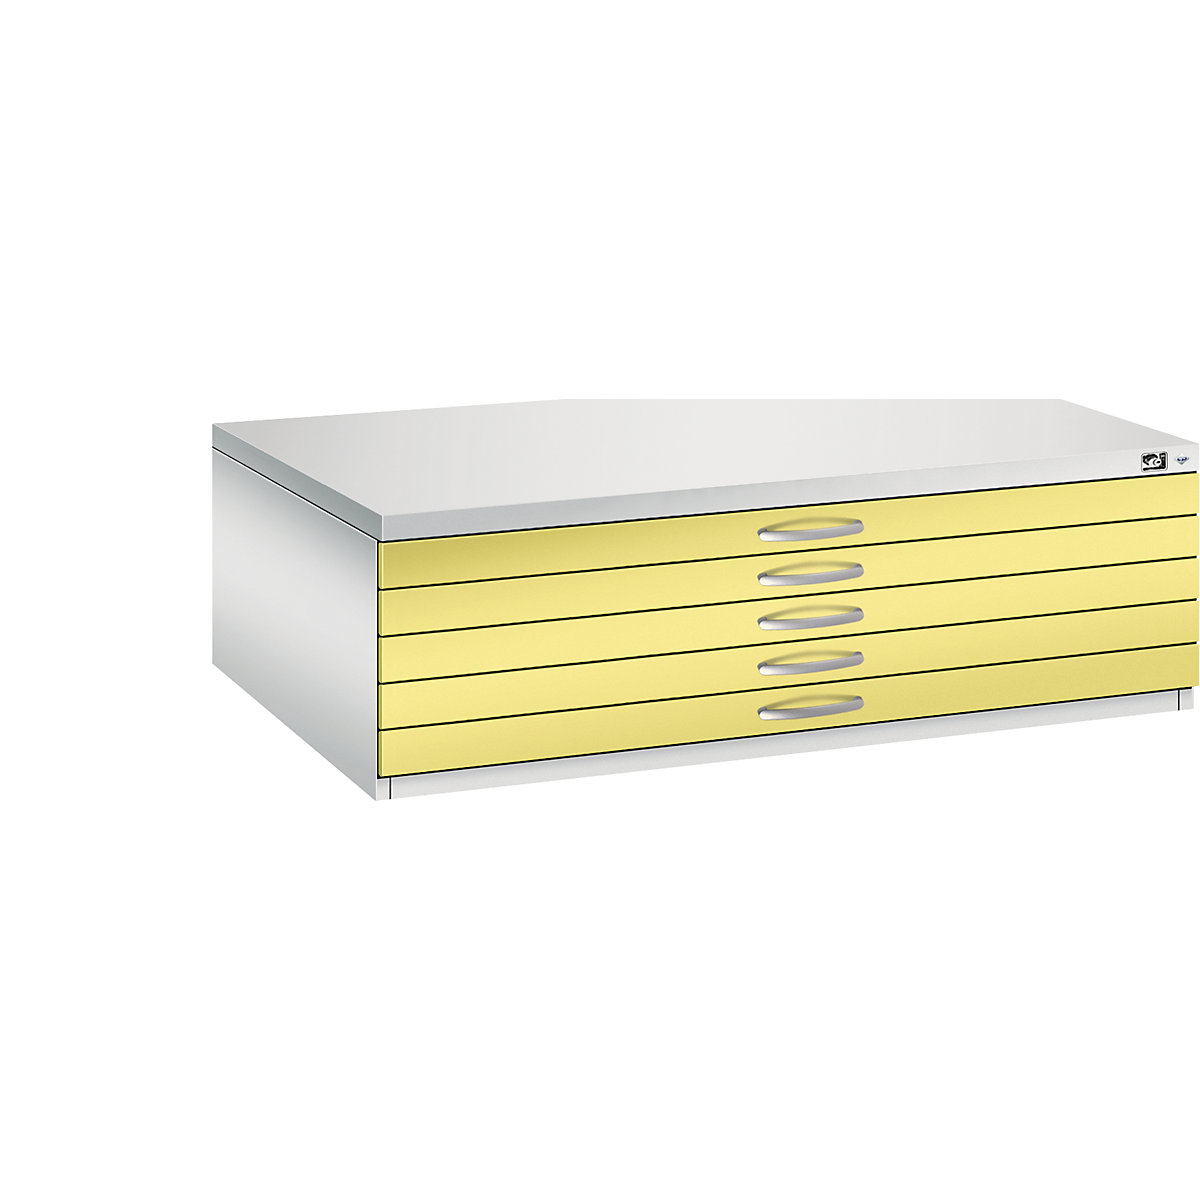 Archivio per disegni – C+P, UNI A0, 5 cassetti, altezza 420 mm, grigio chiaro / giallo zolfo-16